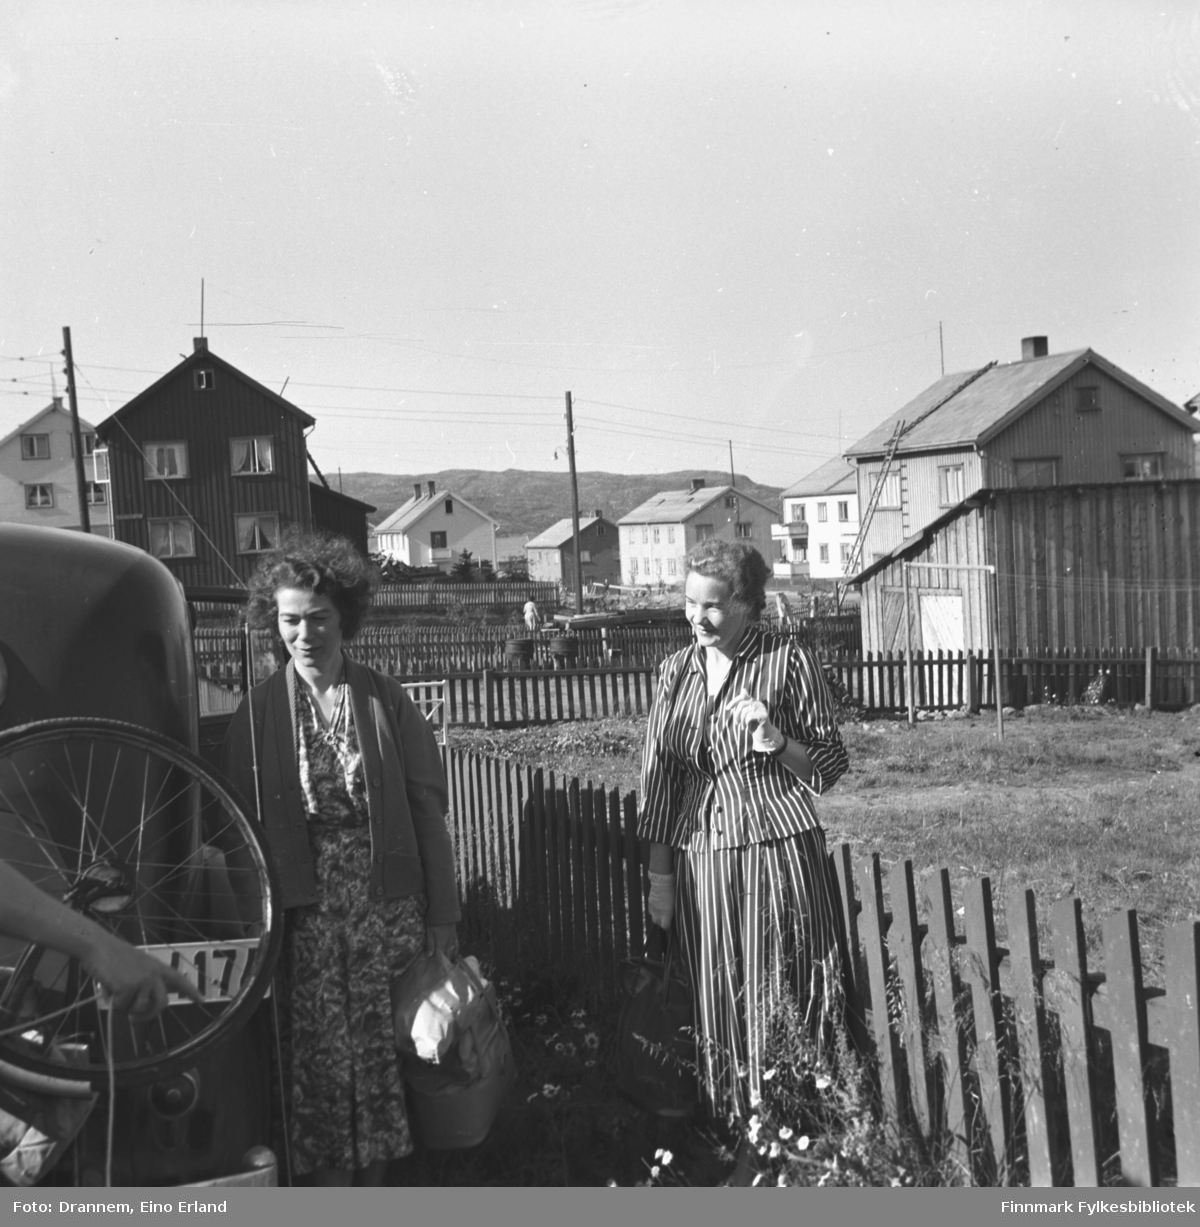 Jenny Drannem og Synnøve Vorren fotografert ved en bil. Begge har en veske i hånda. Man ser i bakgrunnen gjenreisningshus. Stedet er Kirkenes